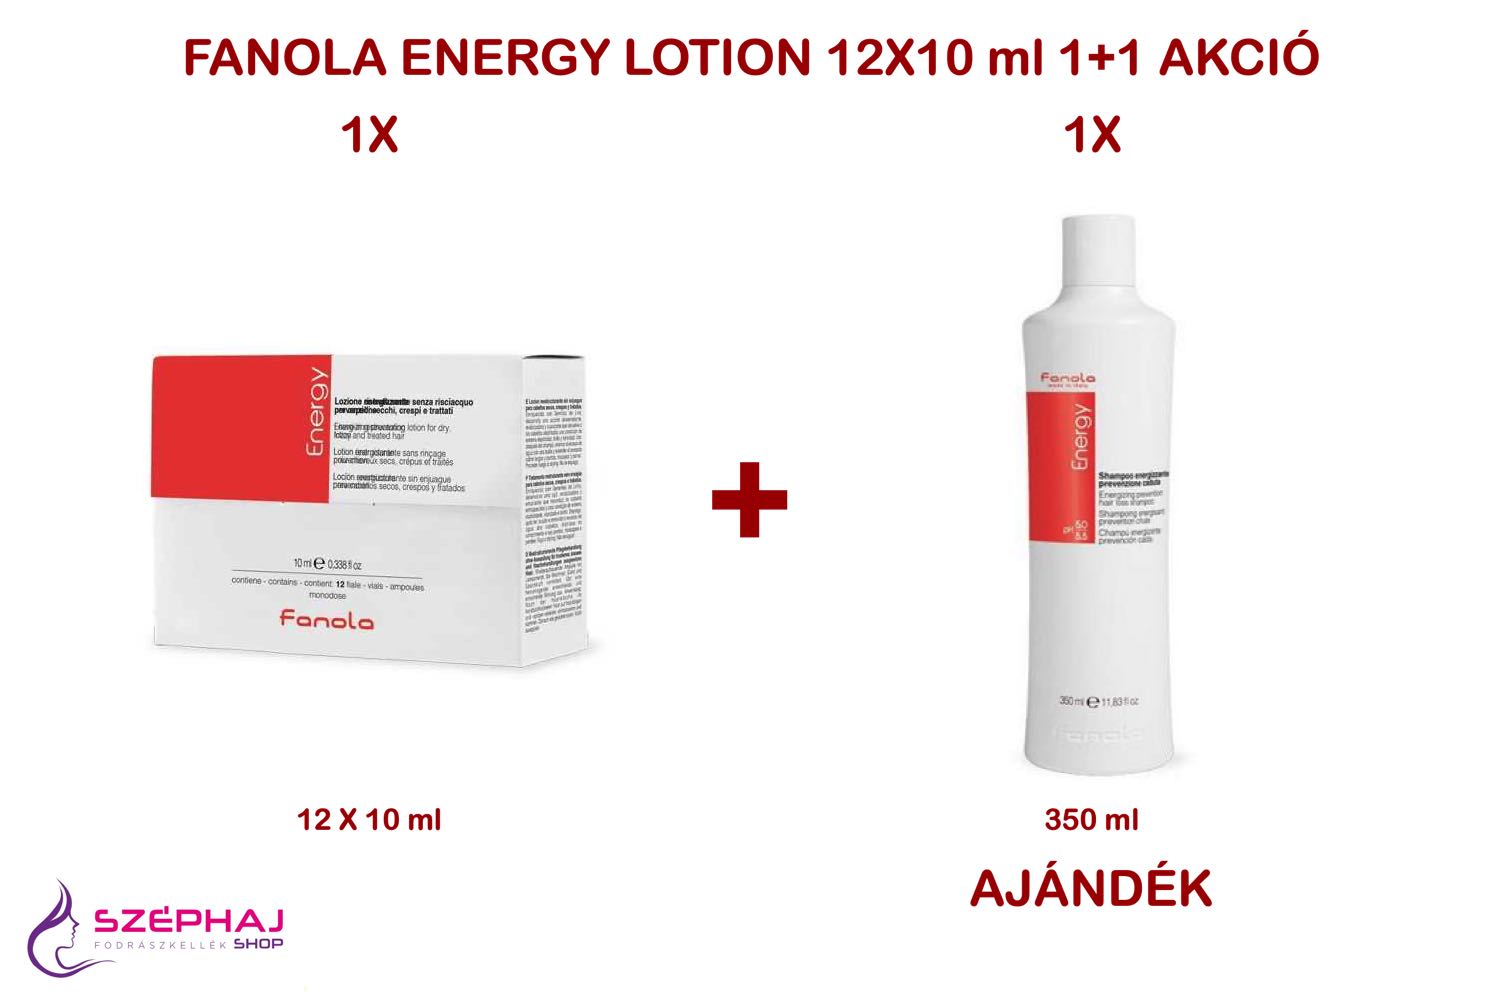 FANOLA Energy Lotion 12x10 ml 1+1 AKCIÓ